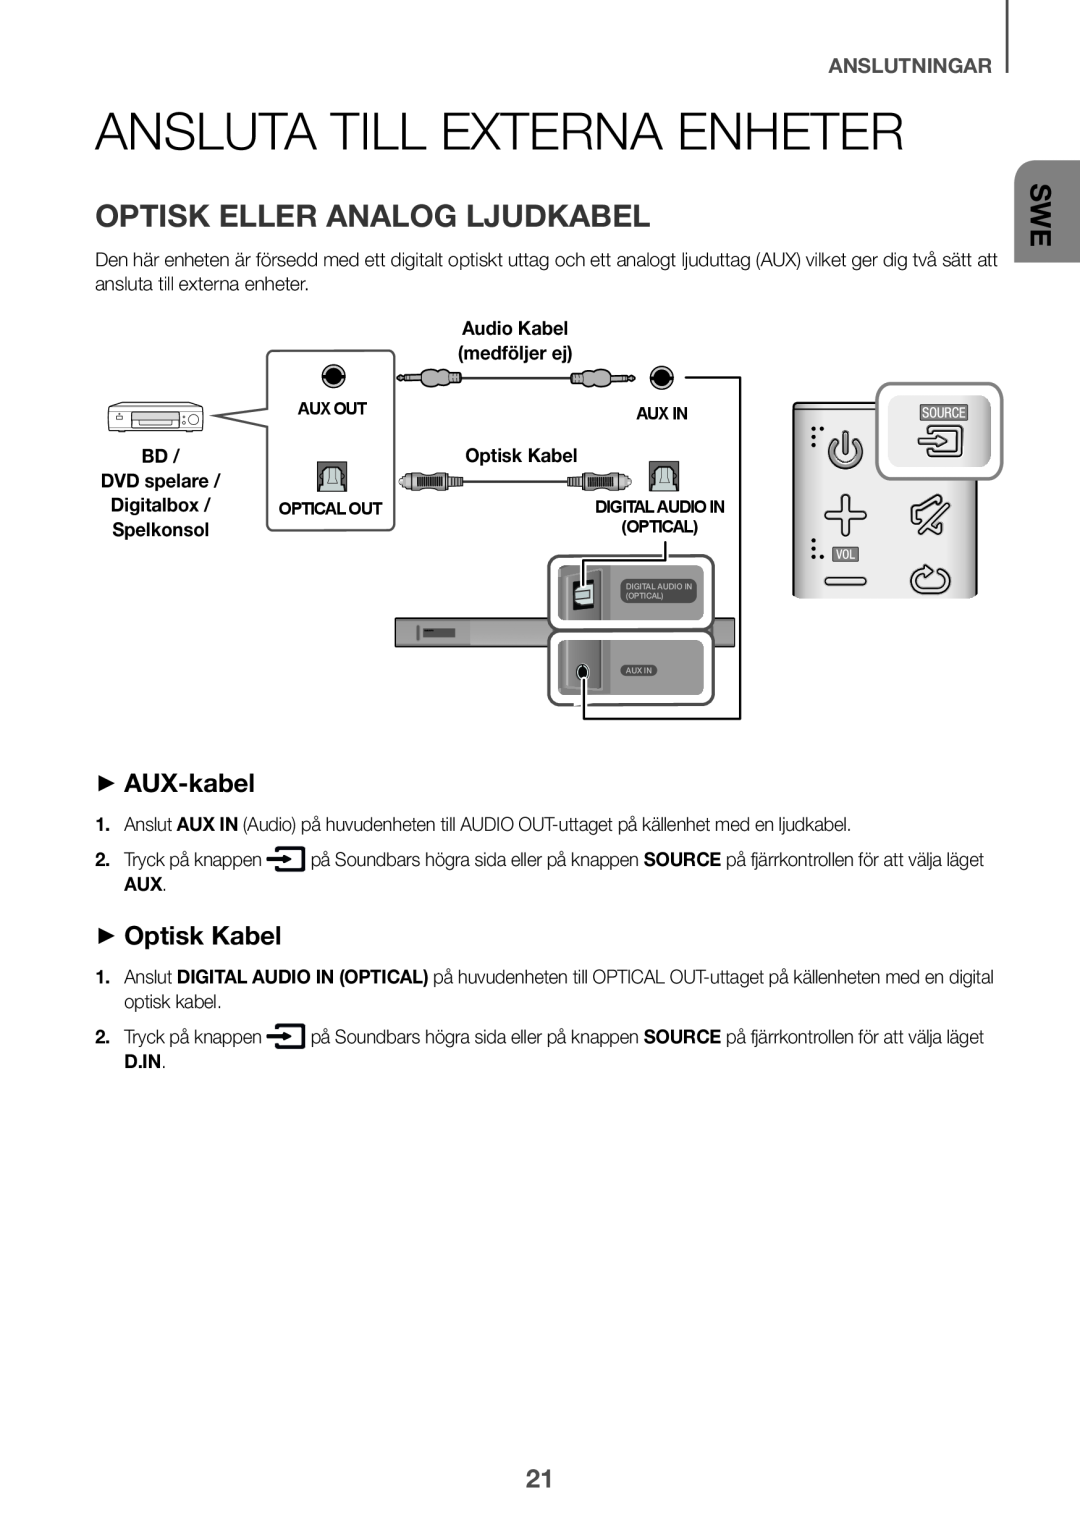 Samsung HW-K650/EN Ansluta till externa enheter, Optisk eller analog ljudkabel, ++AUX-kabel, ++Optisk Kabel, anslutningar 